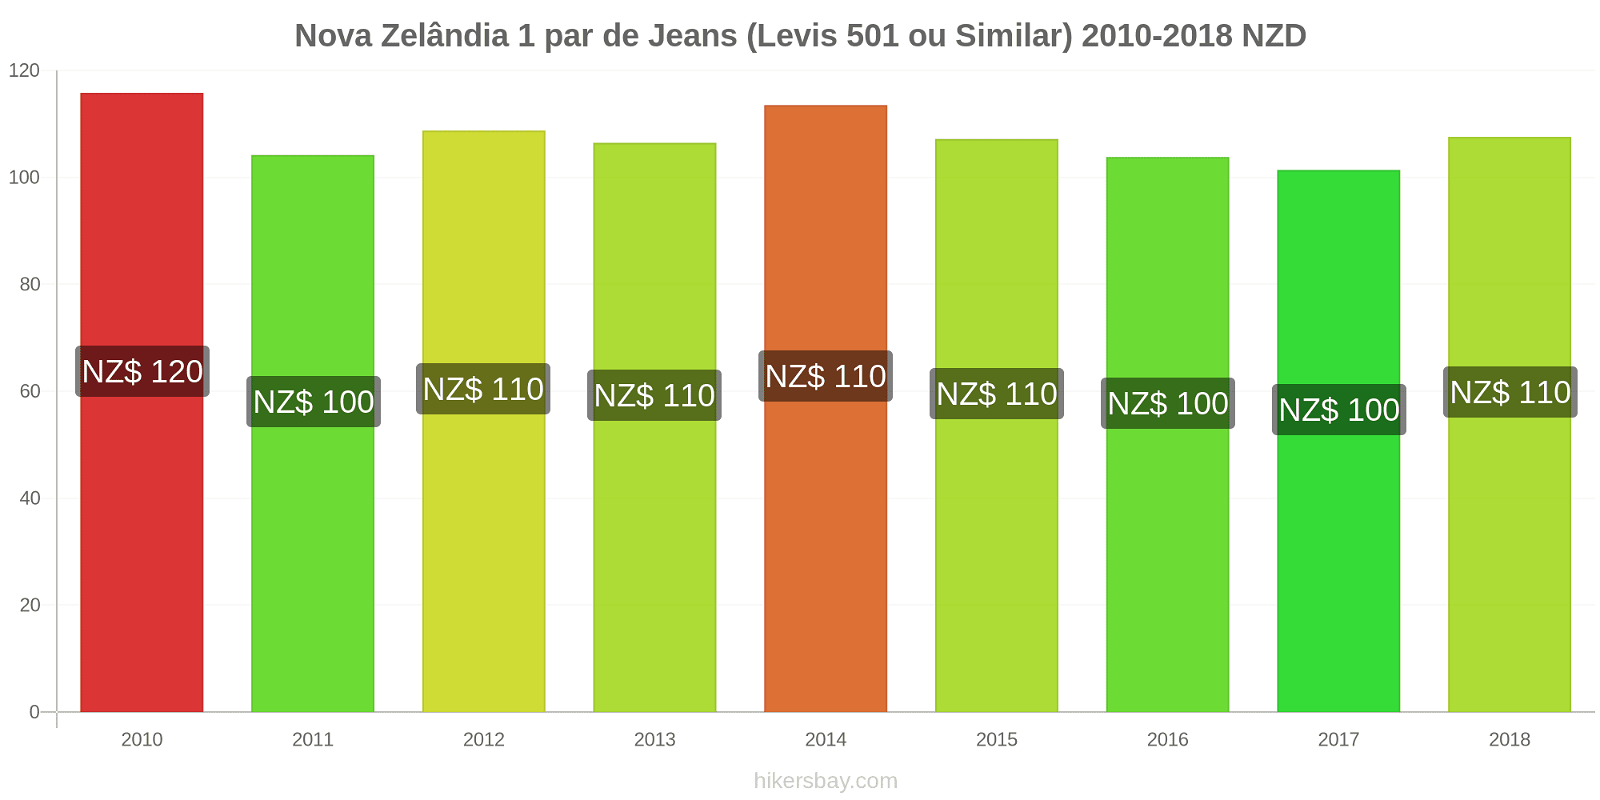 Nova Zelândia mudanças de preços 1 par de jeans (Levis 501 ou similares) hikersbay.com